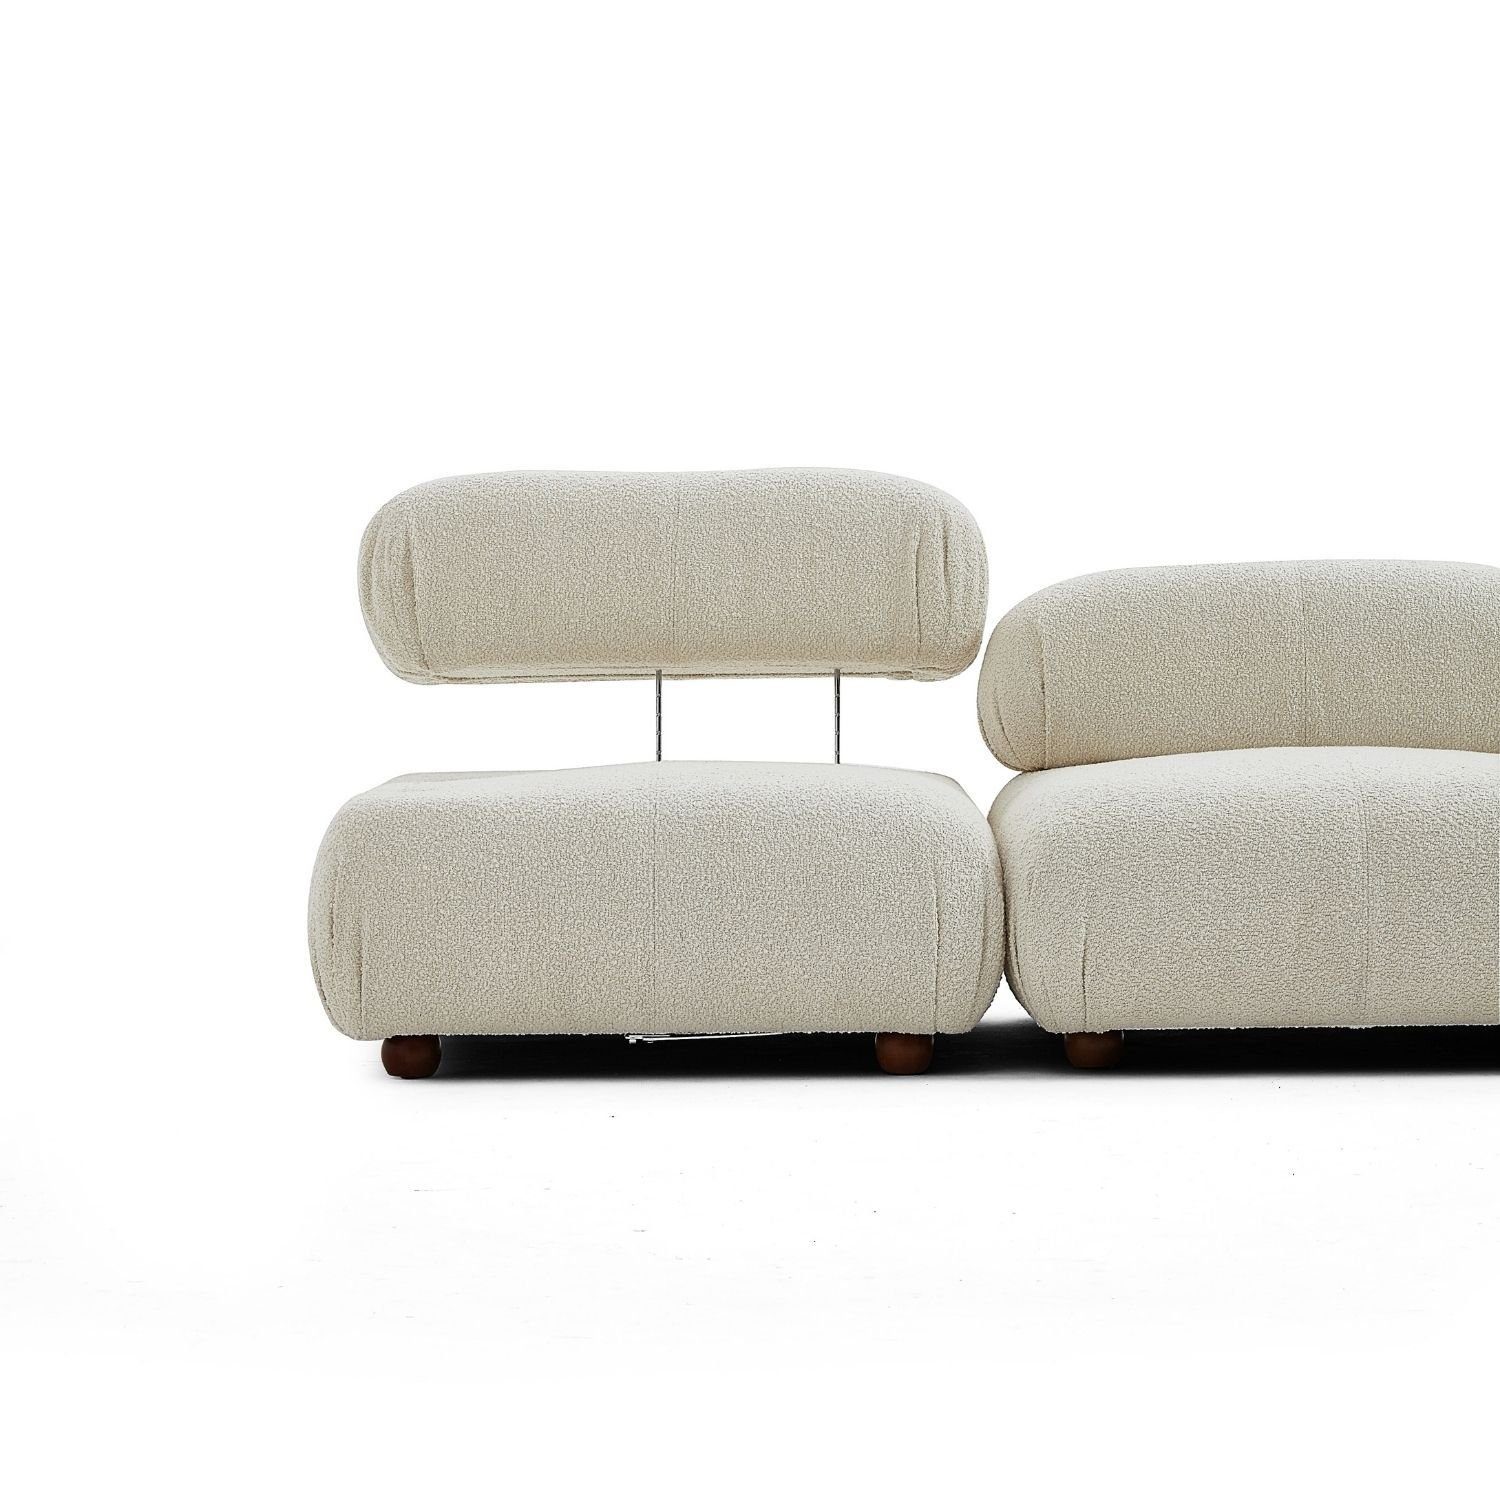 und Knuffiges im neueste Preis Komfortschaum aus enthalten! Touch Aufbau me Blau-Marine-Lieferung Sitzmöbel Sofa Generation